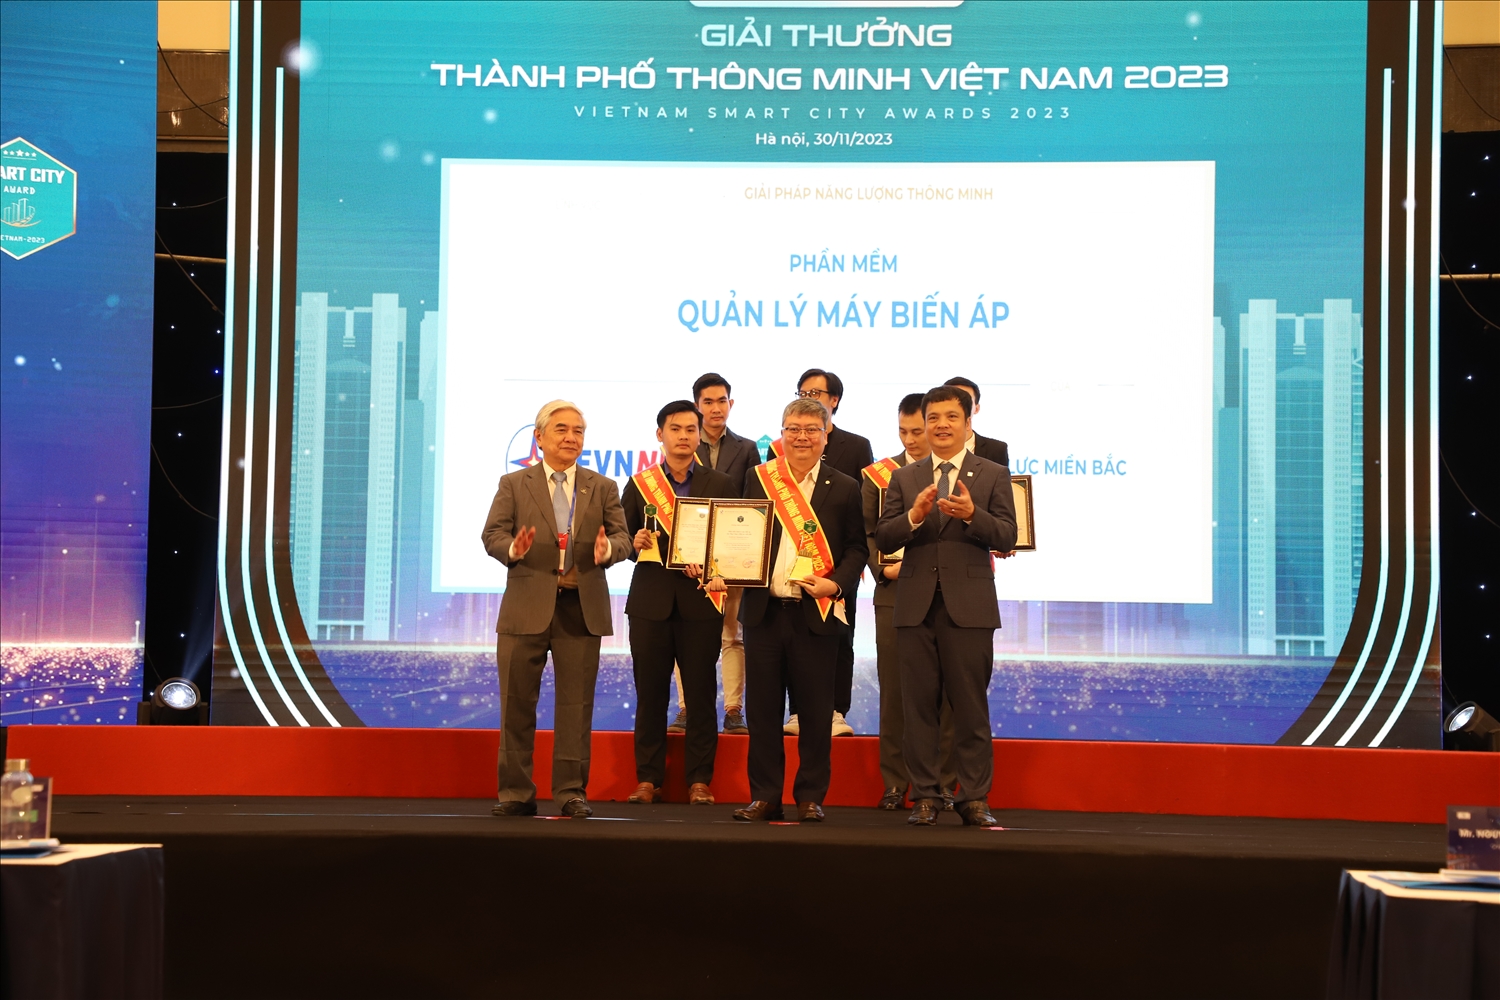 Ông Vũ Đình Khiêm - Giám đốc Công ty Công nghệ Thông tin Điện lực miền Bắc đại diện EVNNPC nhận giải thưởng